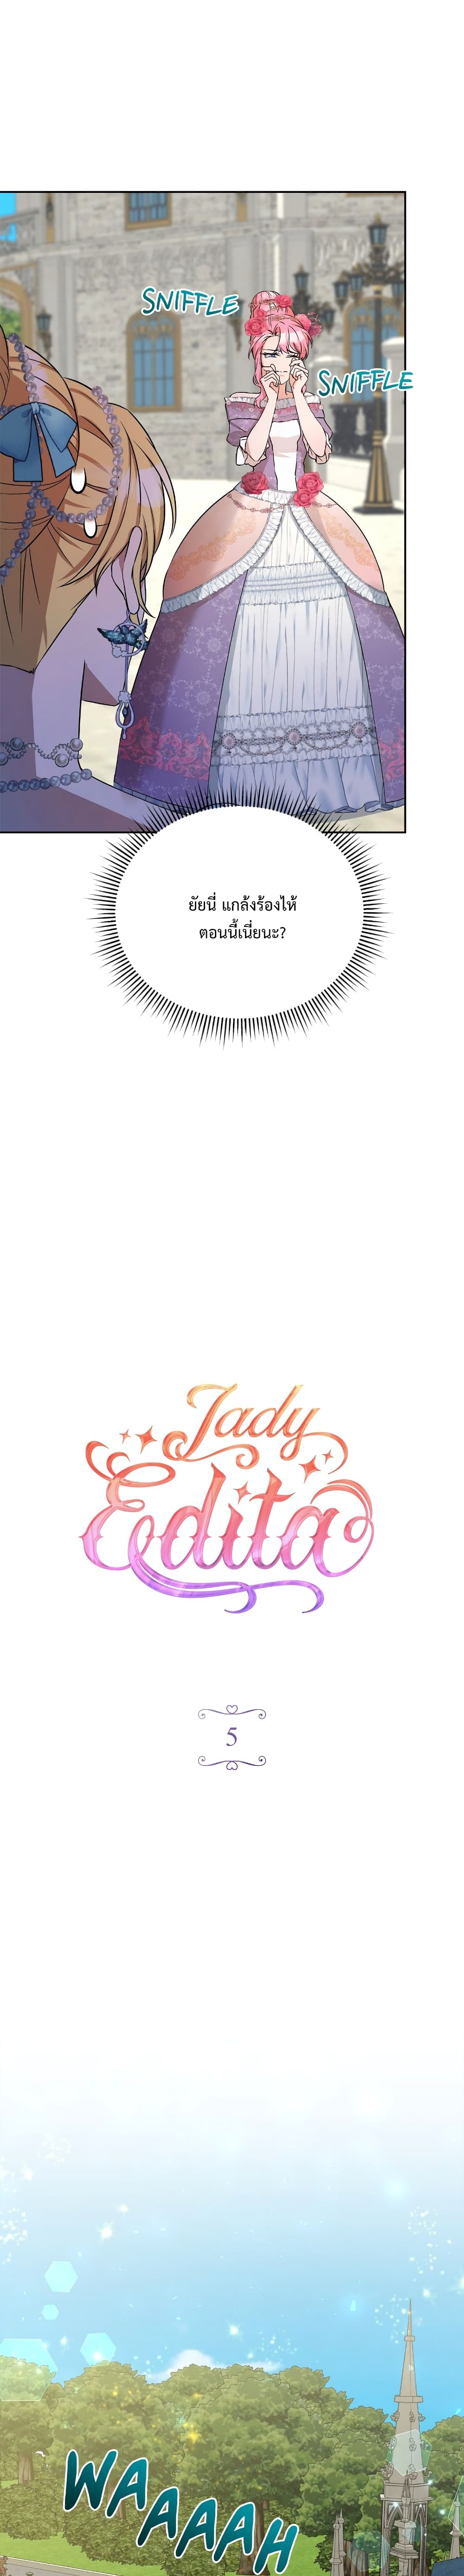 Lady Edita ตอนที่ 5 (6)